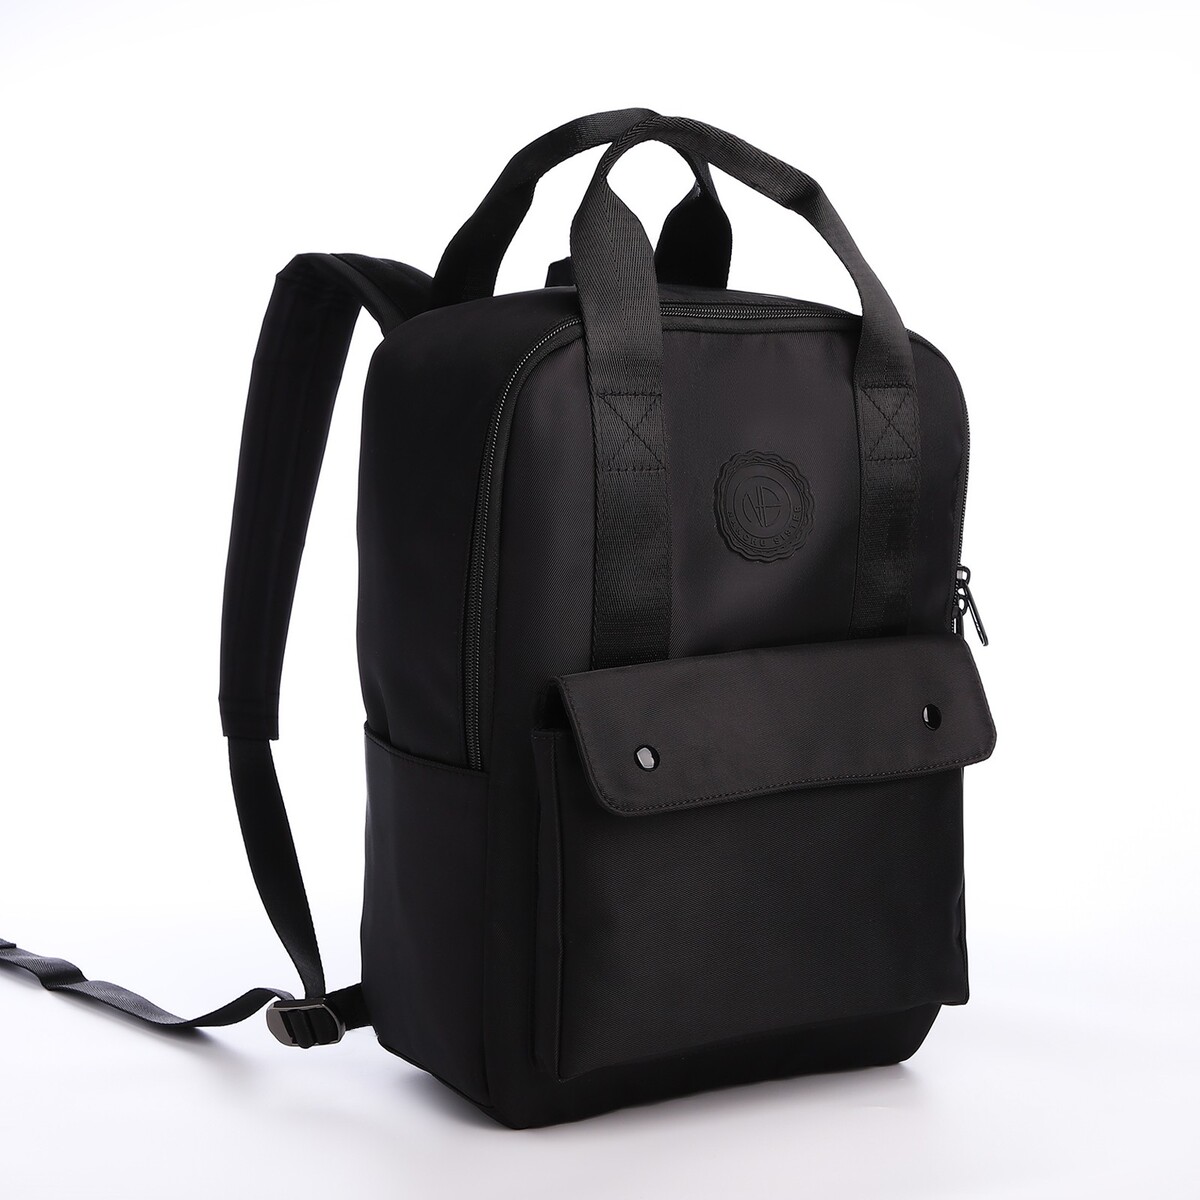 Рюкзак молодежный из текстиля на молнии, отдел для ноутбука, 4 кармана, цвет черный рюкзак pixel one для ноутбука чёрно жёлтый